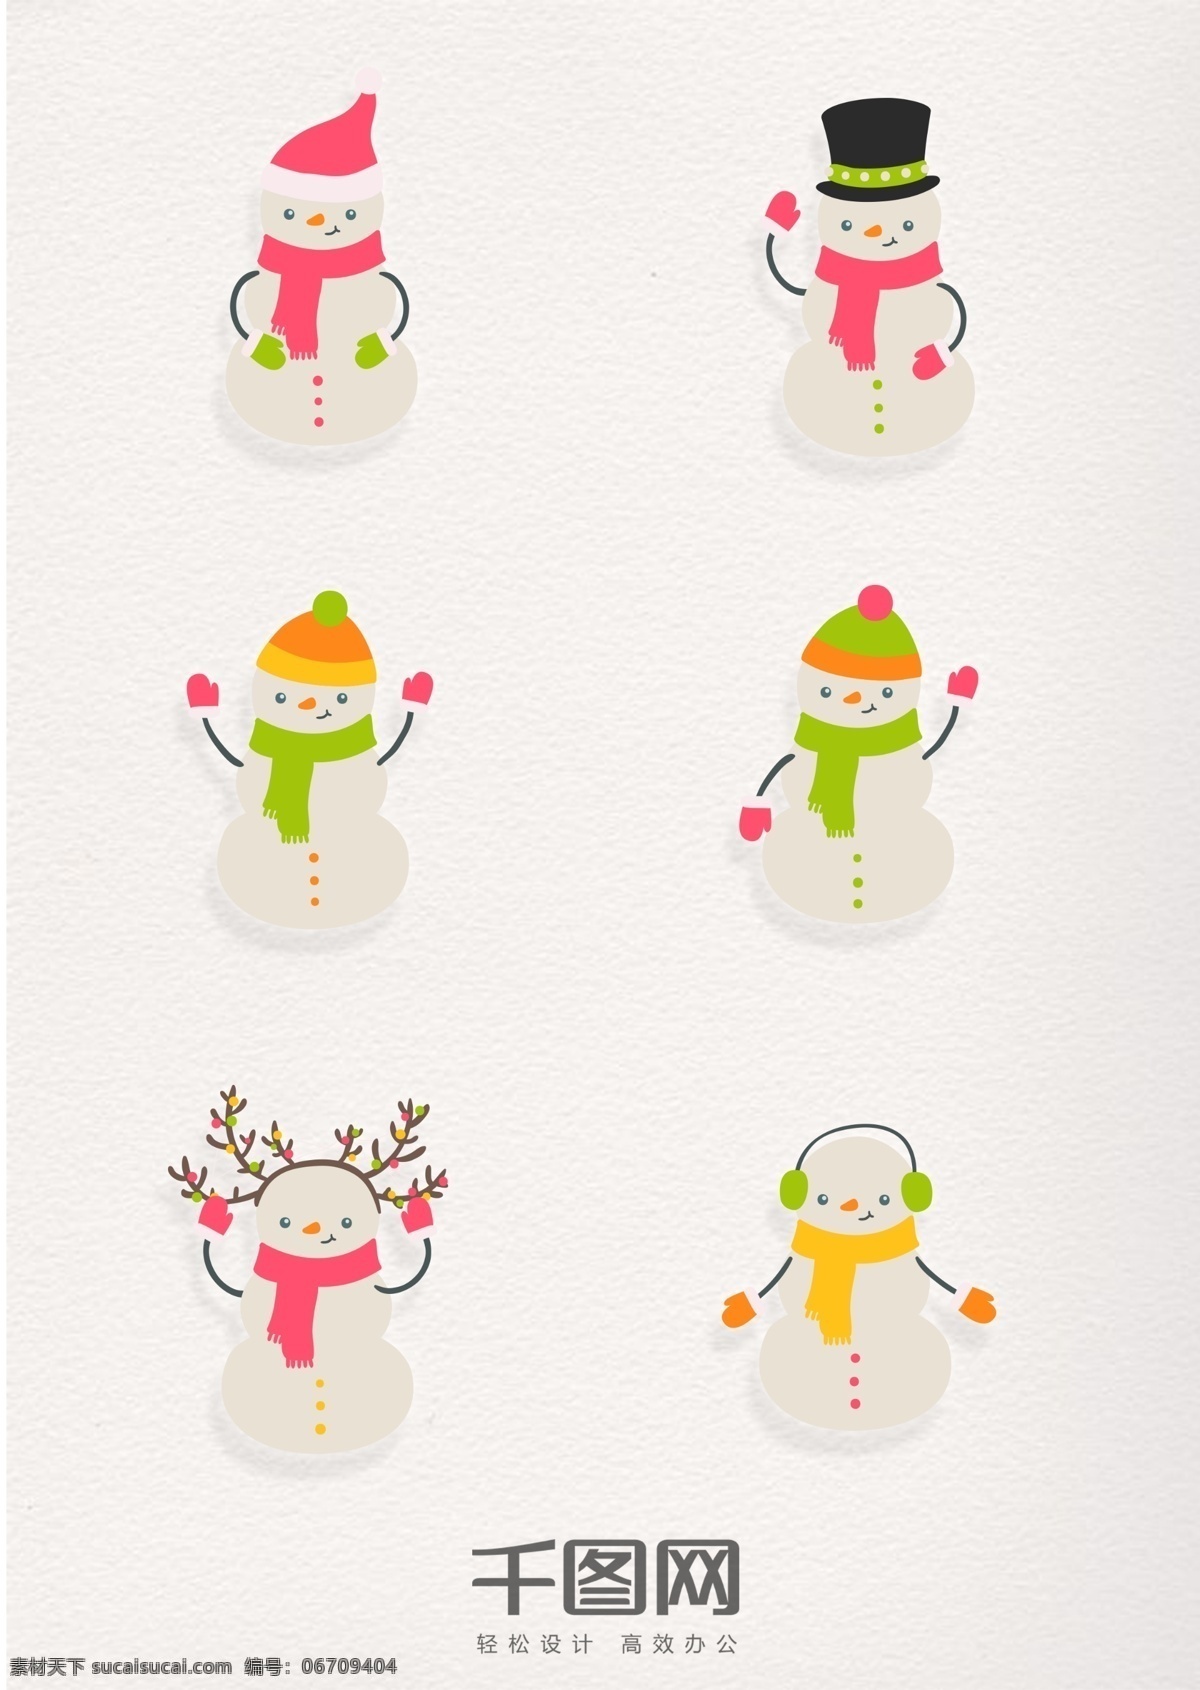 复古 风格 可爱 雪人 元素 图标 古典 圣诞 圣诞元素 白色雪人 帽子 礼帽 围巾